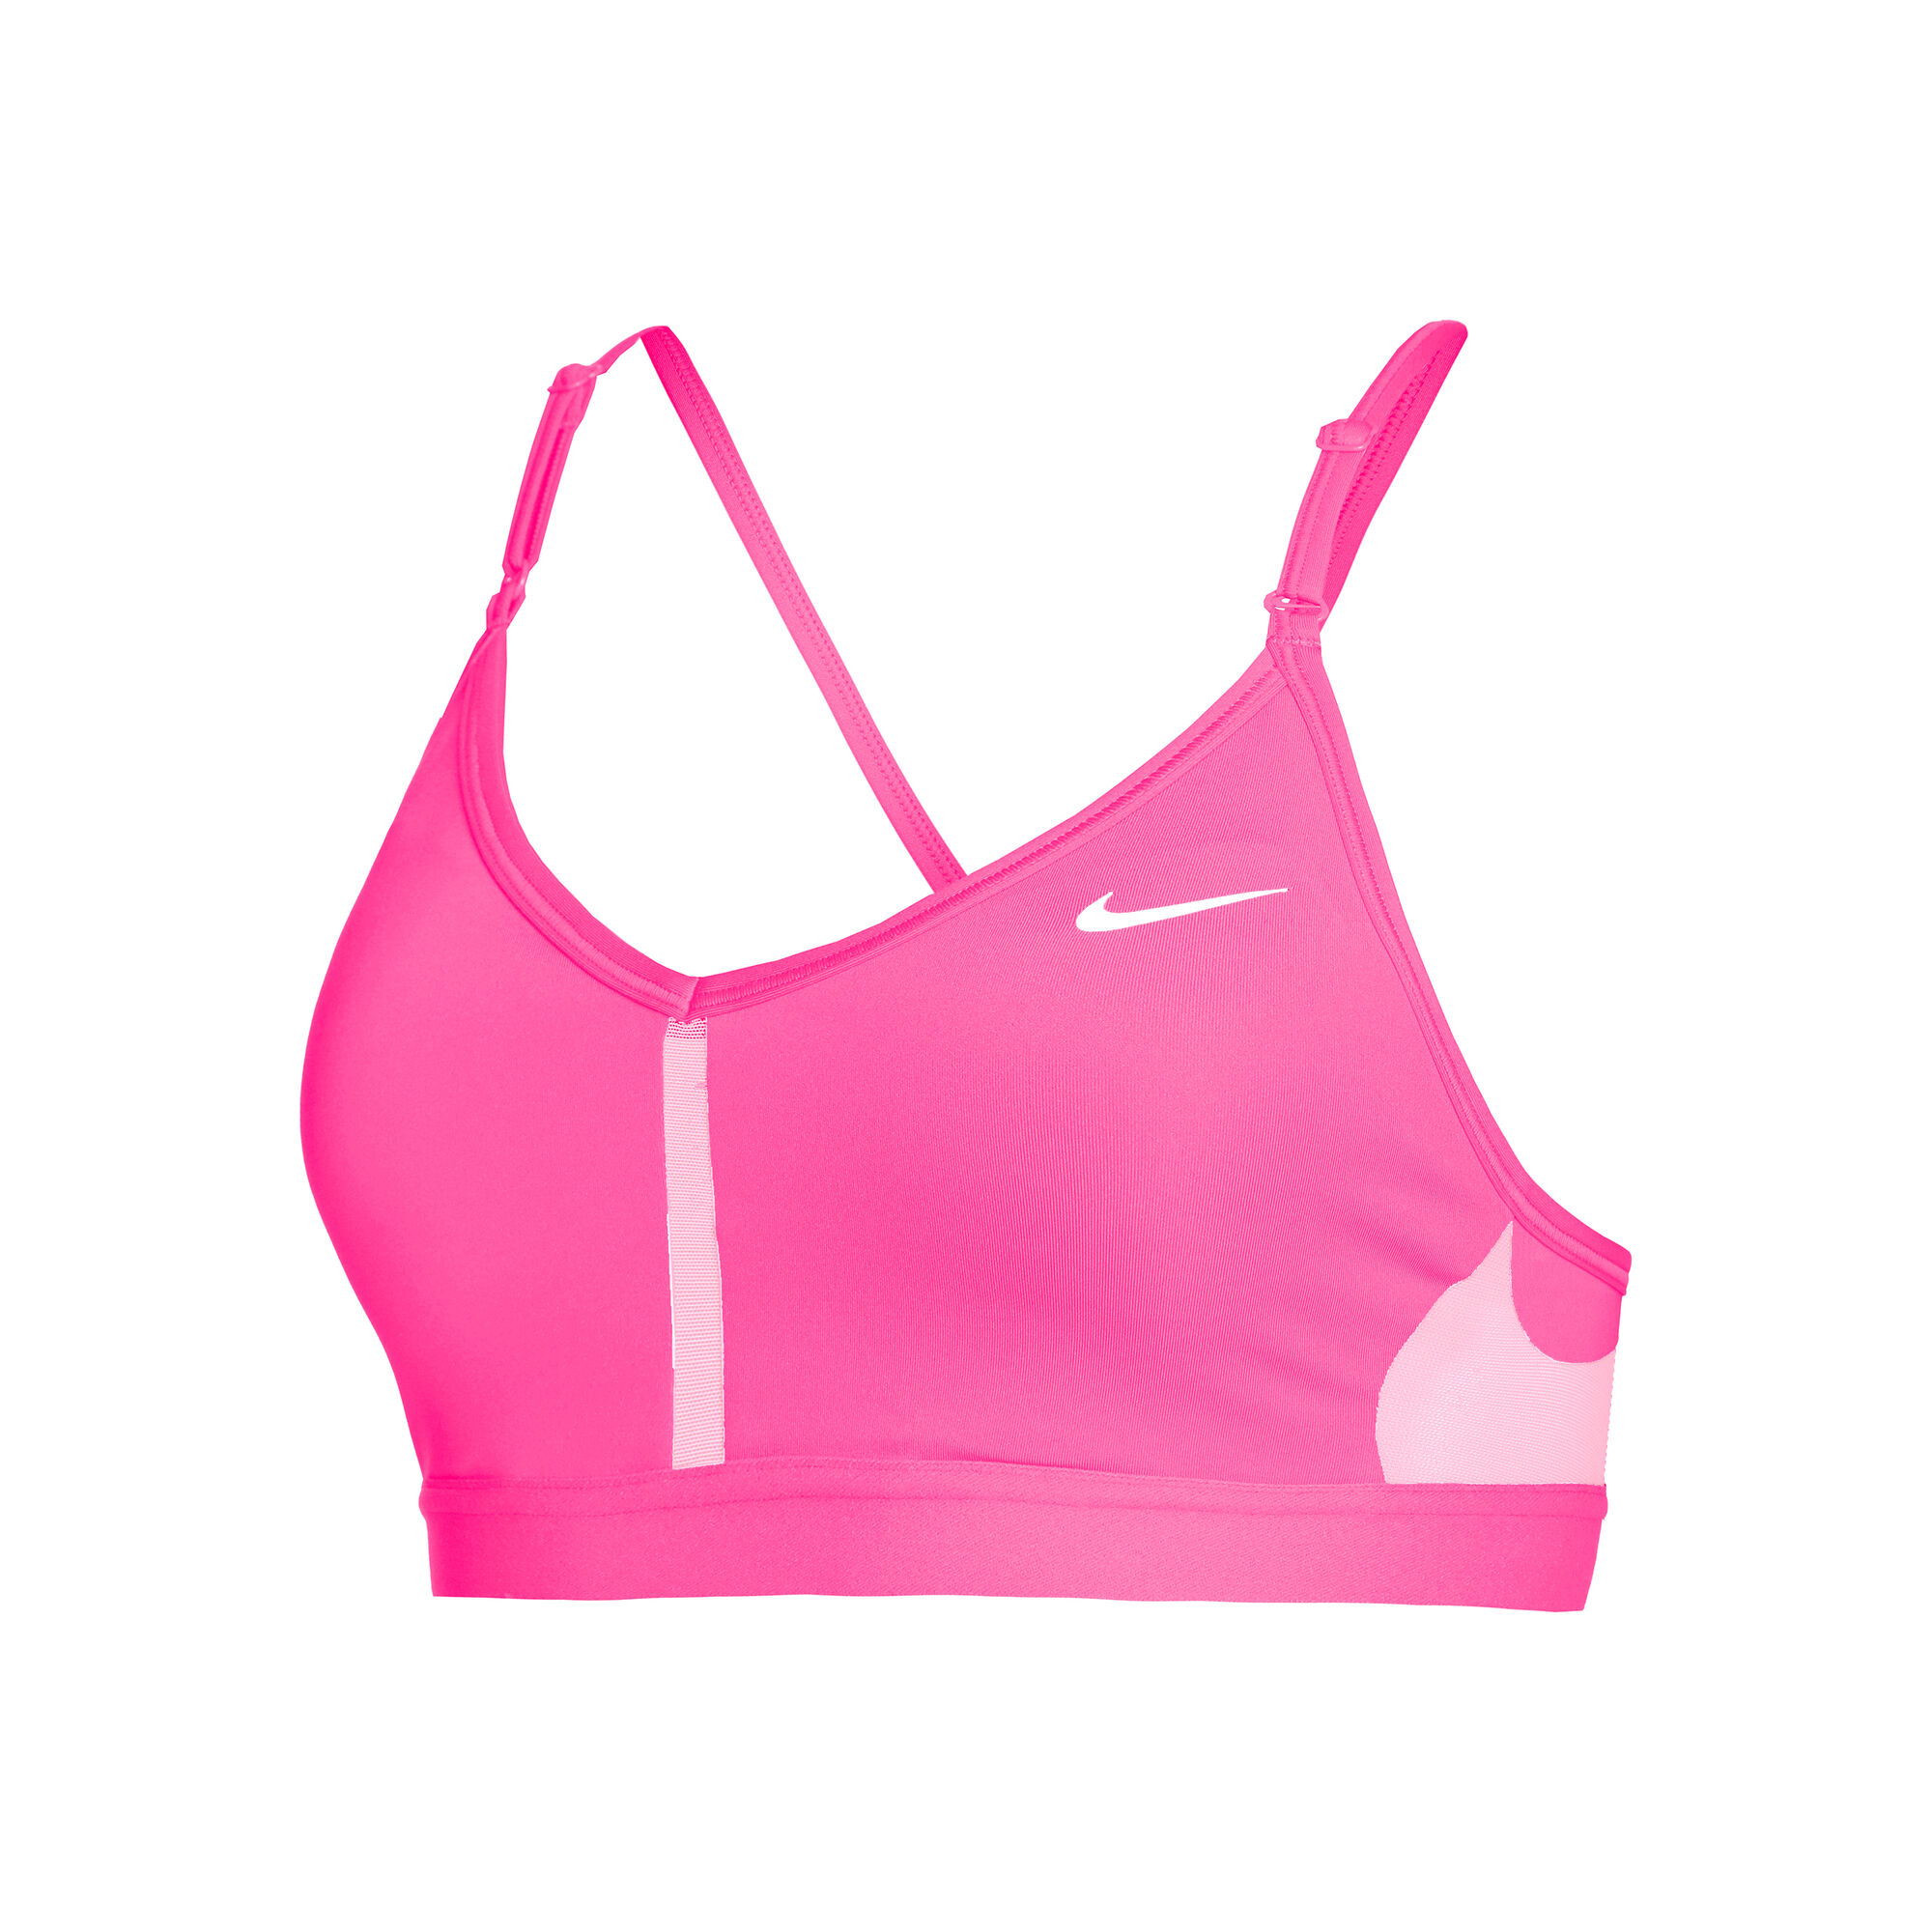 Топ для девочки теннисный Nike Dri-Fit One Sports Bra - playful pink/white  - купить по выгодной цене